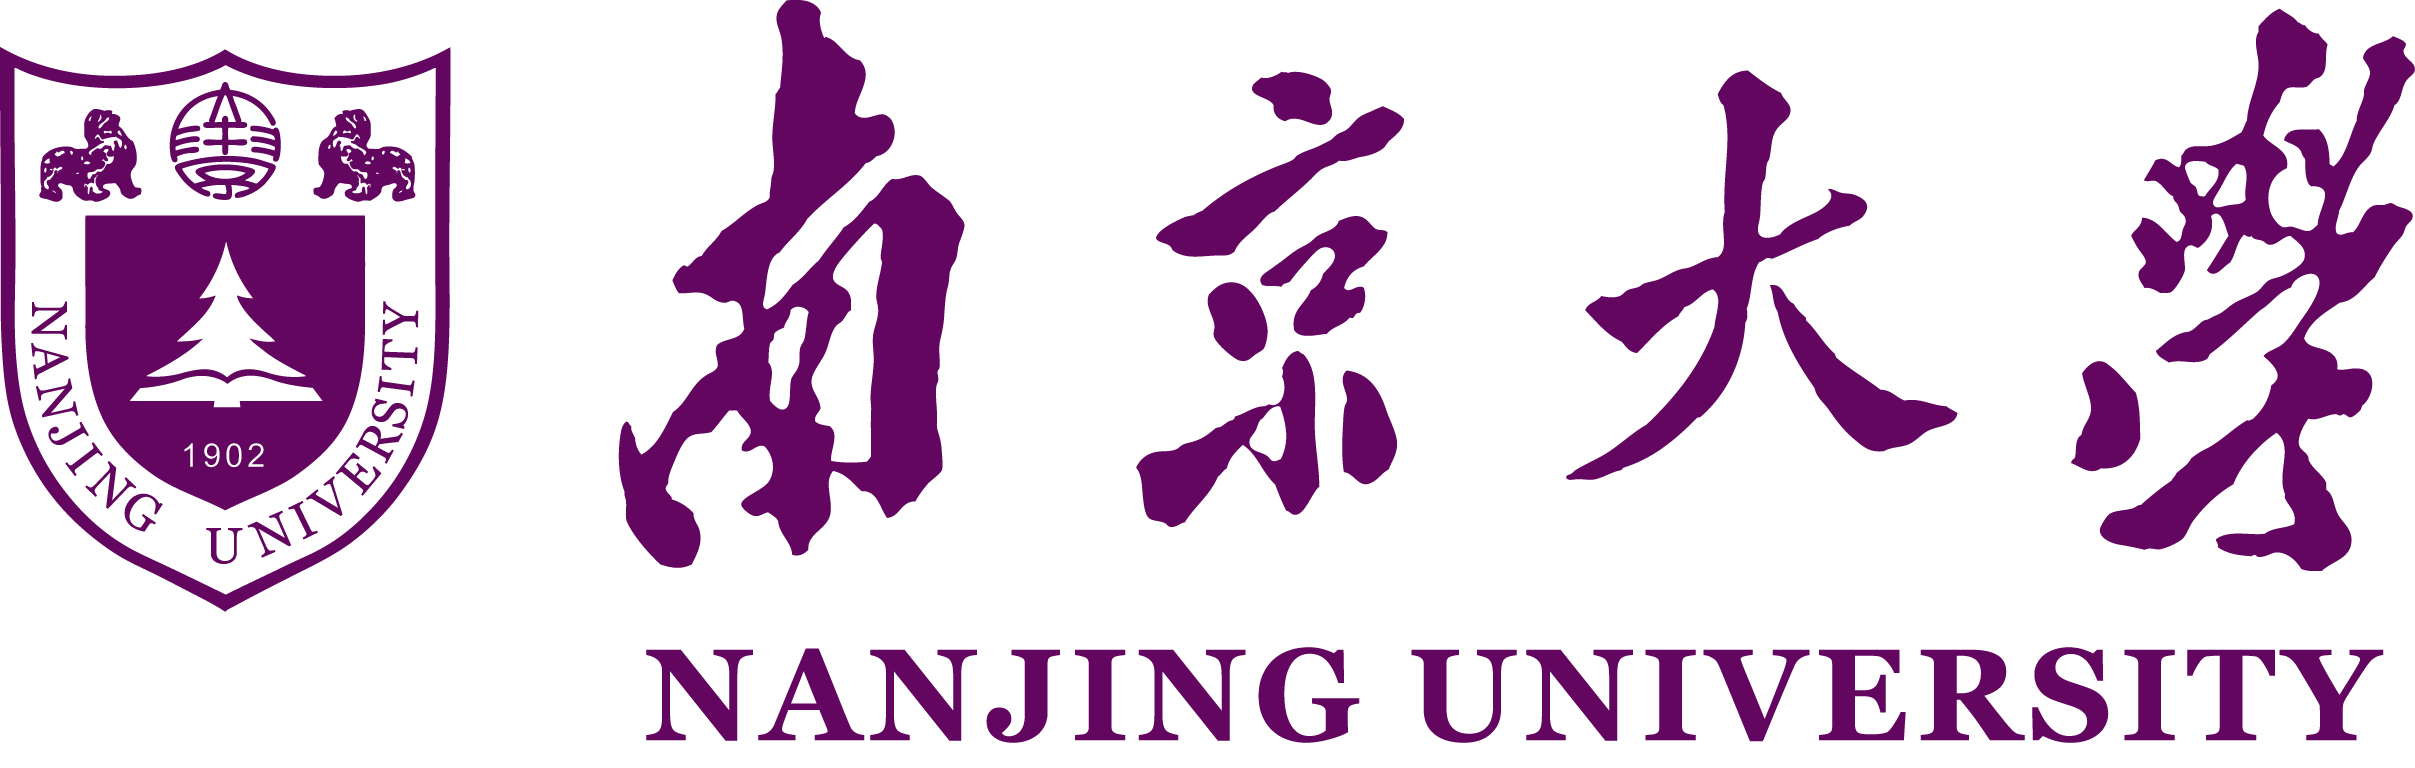 Nanjing University | Study Abroad